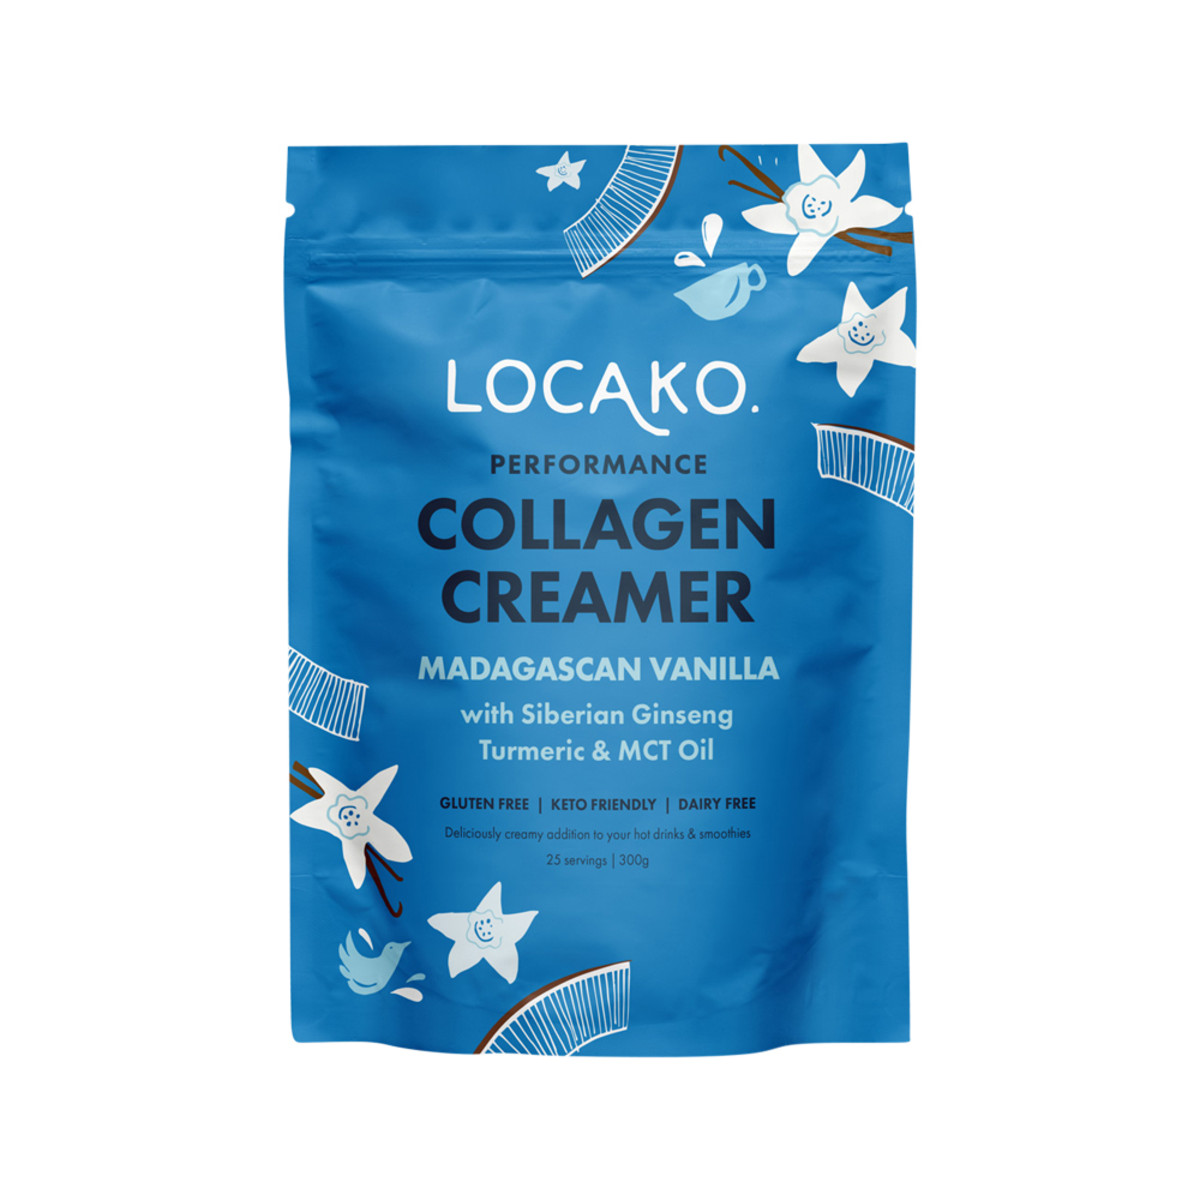 LOCAKO - Collagen Creamer Performance (Madagascan Vanilla) 300g